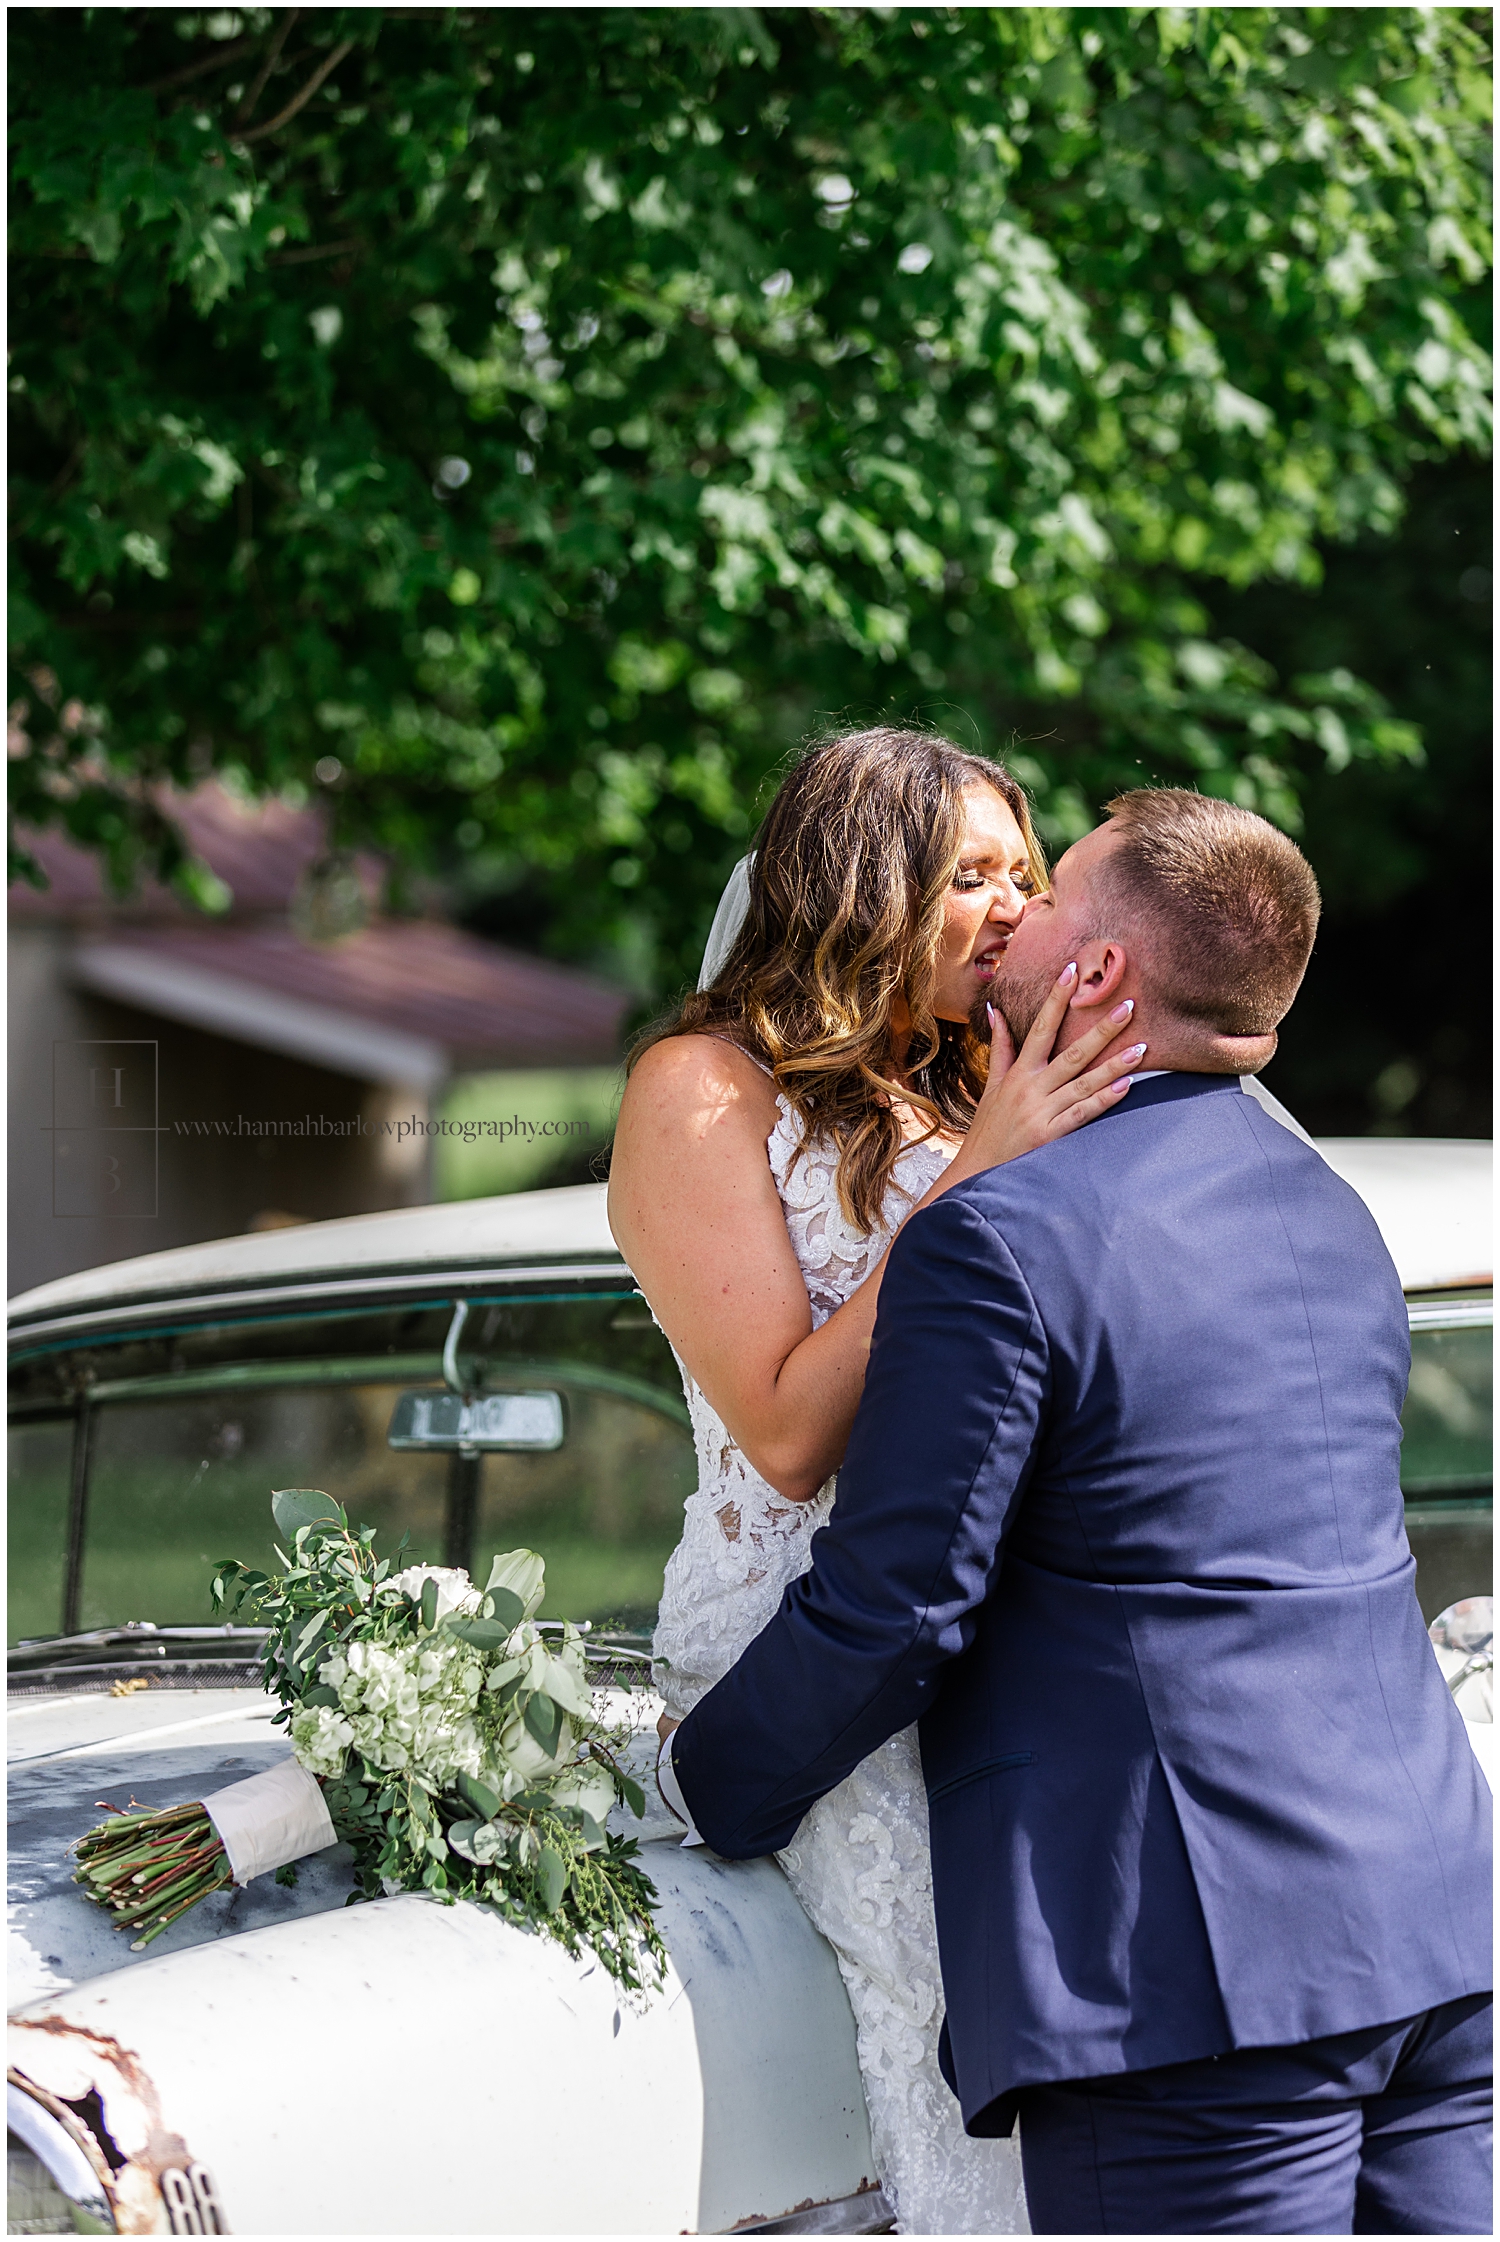 Bride kisses groom's teeth in wedding blooper.